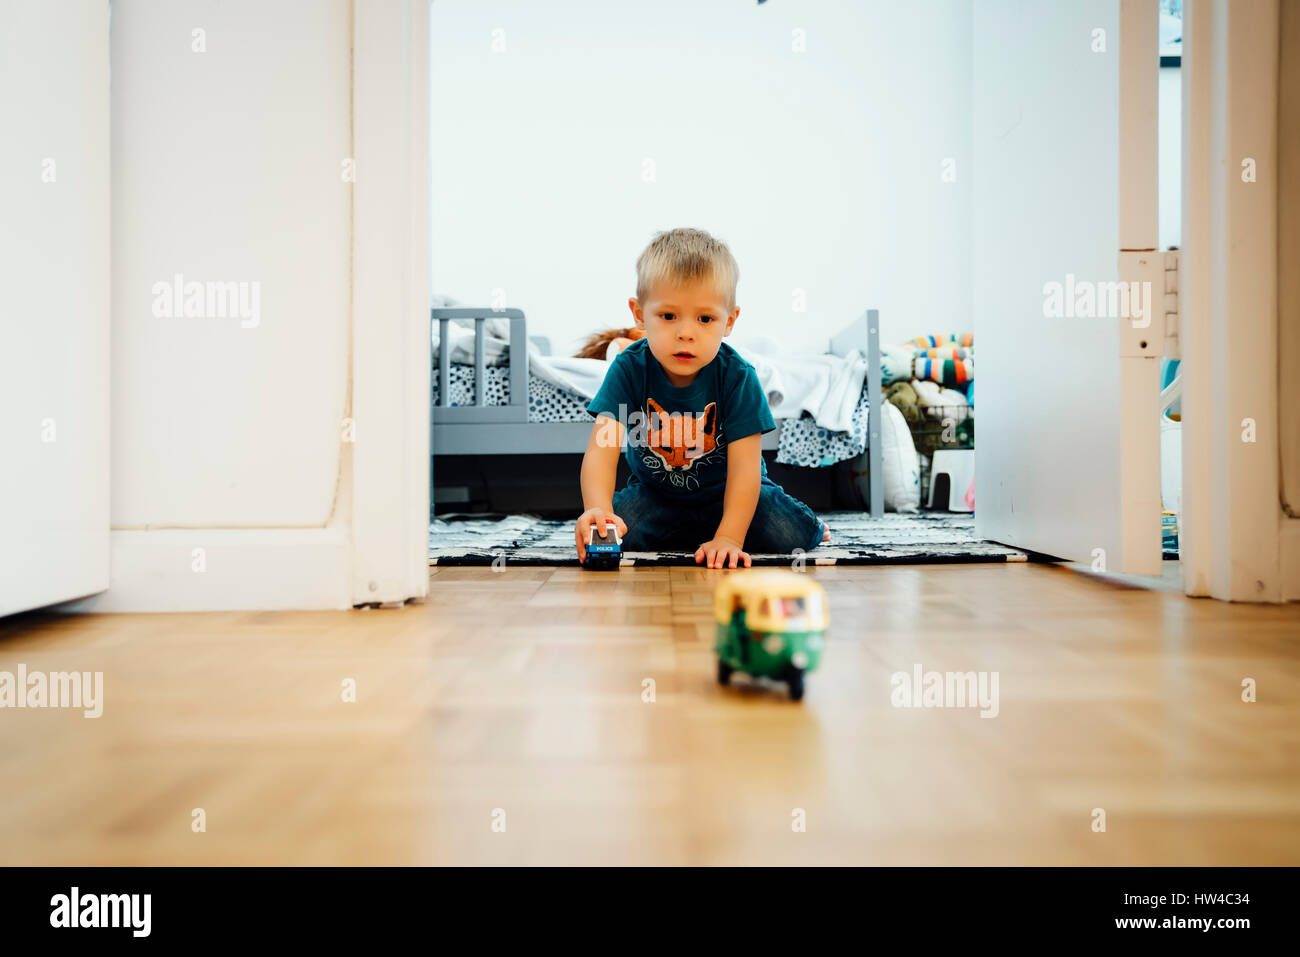 Junge kniend am Boden schieben Spielzeugautos Stockfoto